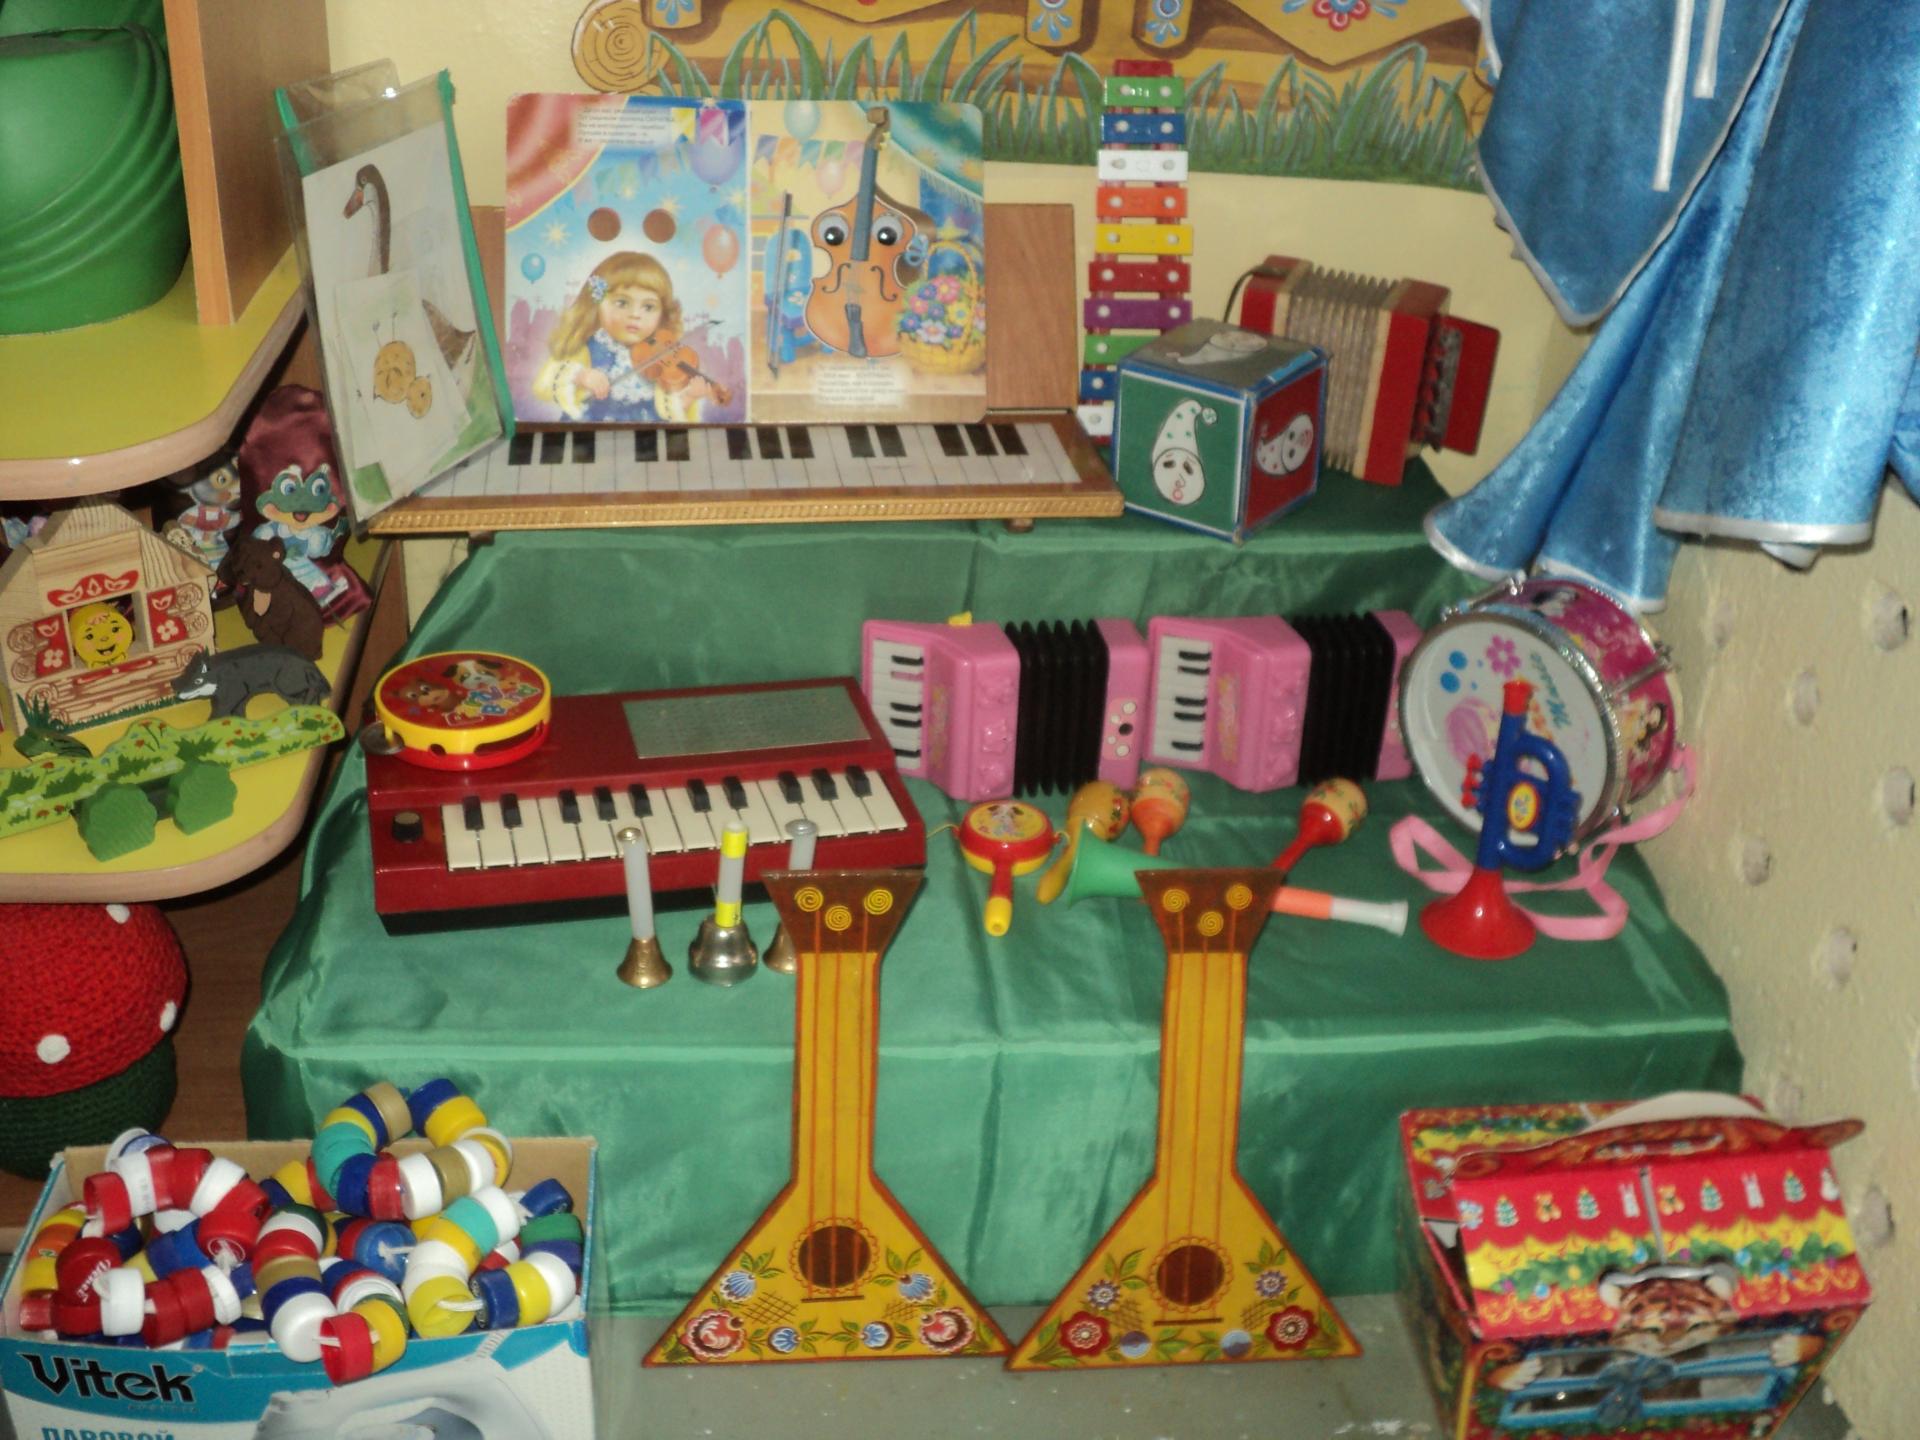 Музыкальный уголок в детском саду